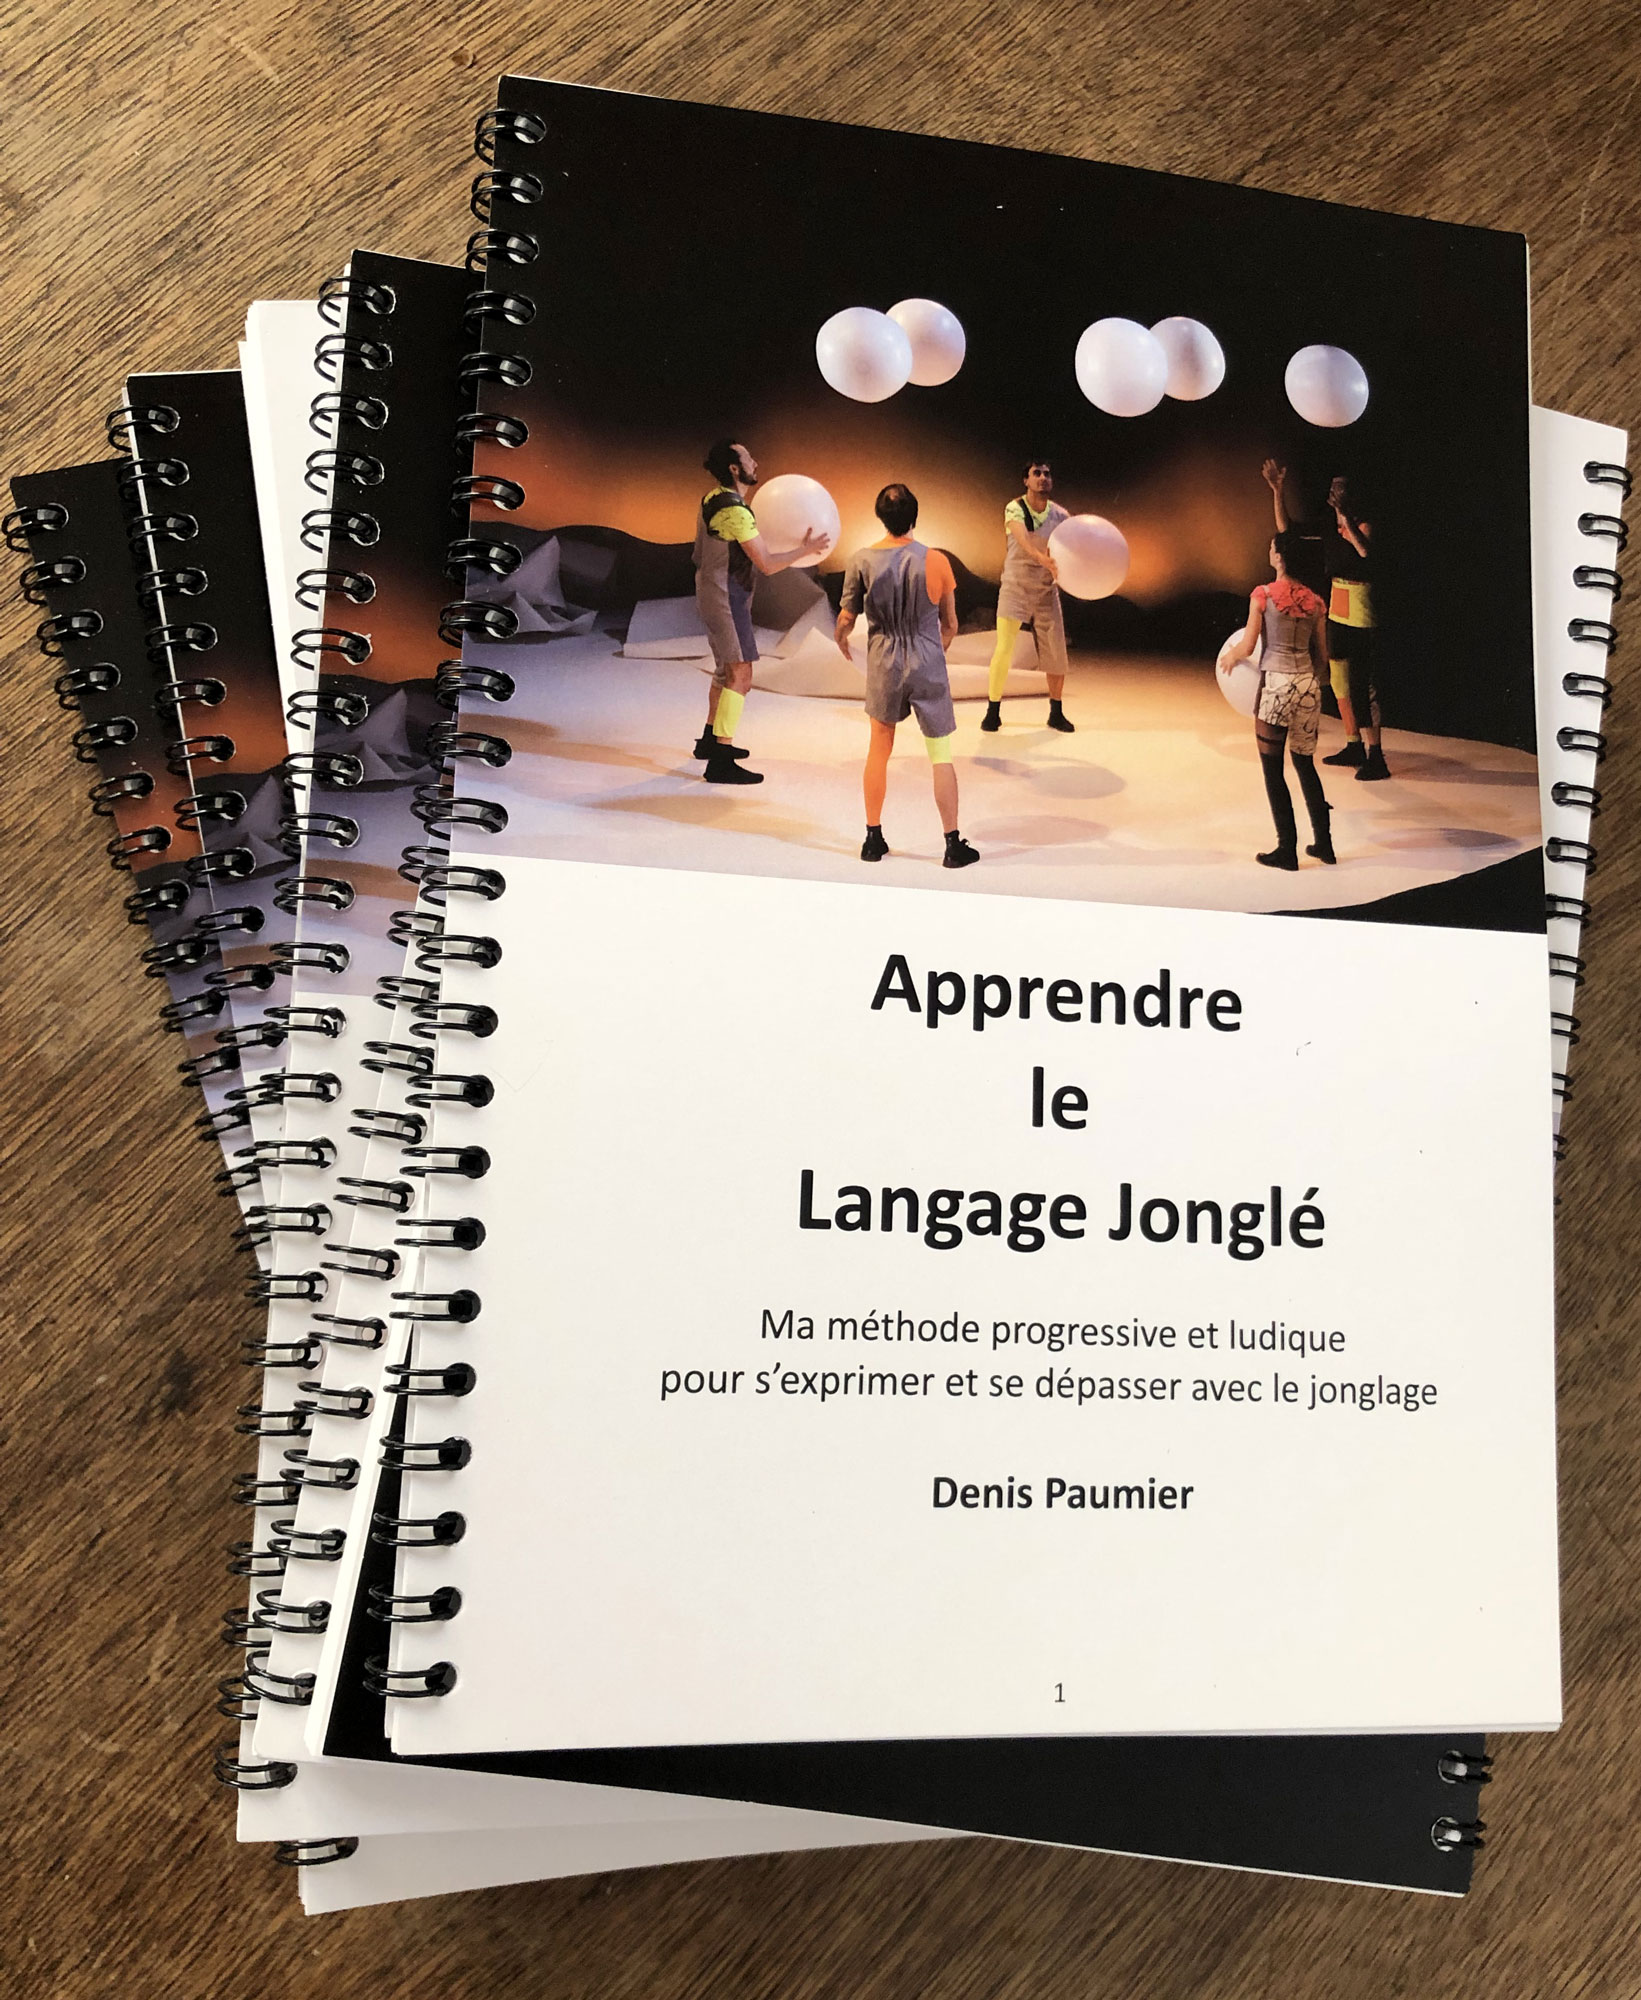 Manuel d'initiation au jonglage : Apprendre le Langage Jonglé